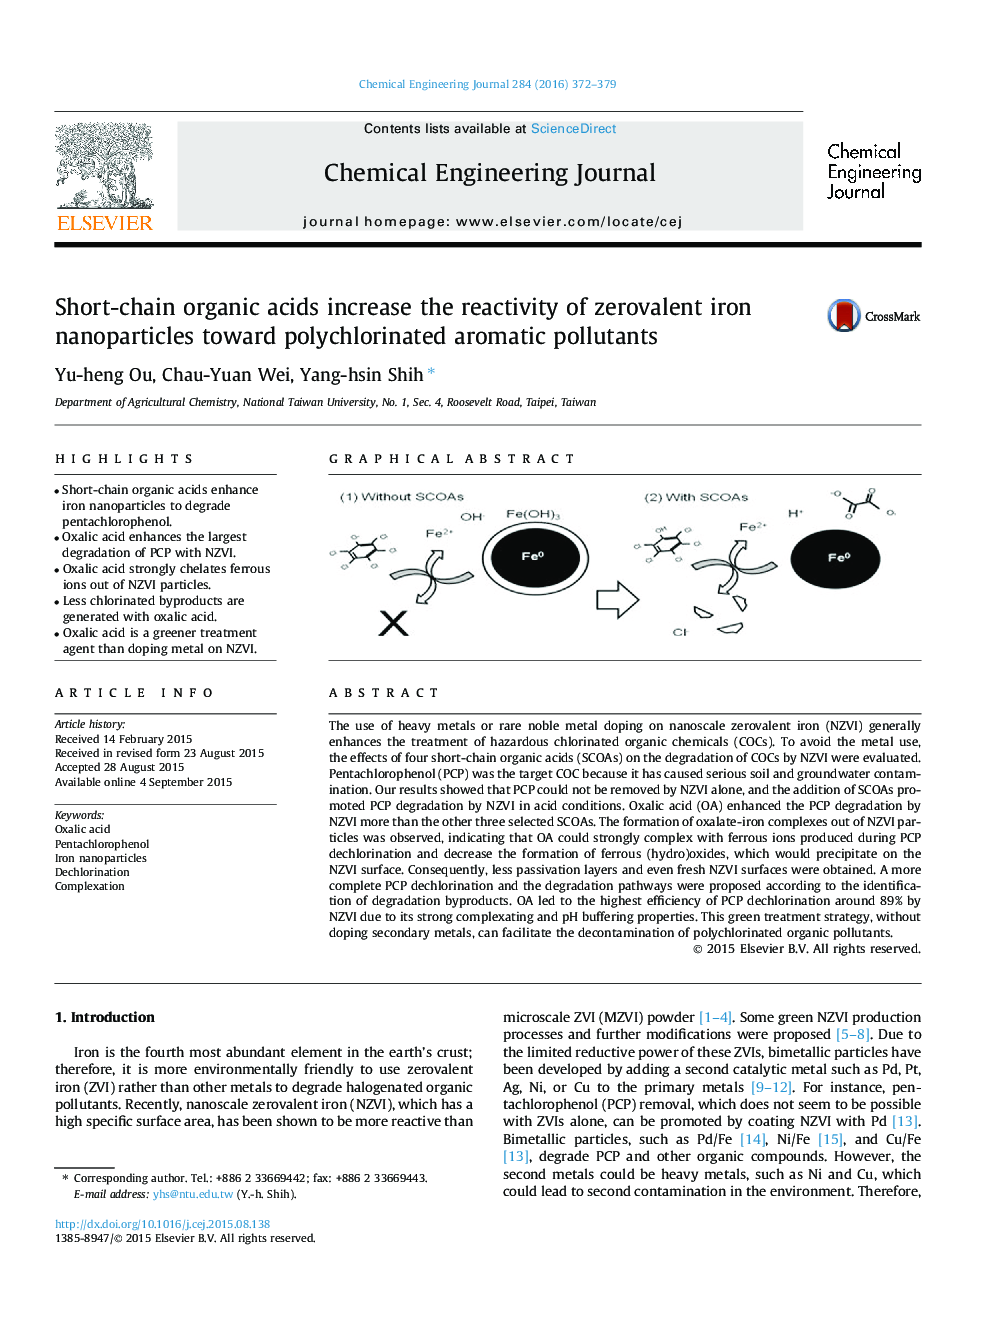 اسید های ارگانیک زنجیره ای واکنش پذیری نانوذرات آهن زورووالنتی را به سمت آلاینده های آروماتیک پلی مچلر تبدیل می کنند 